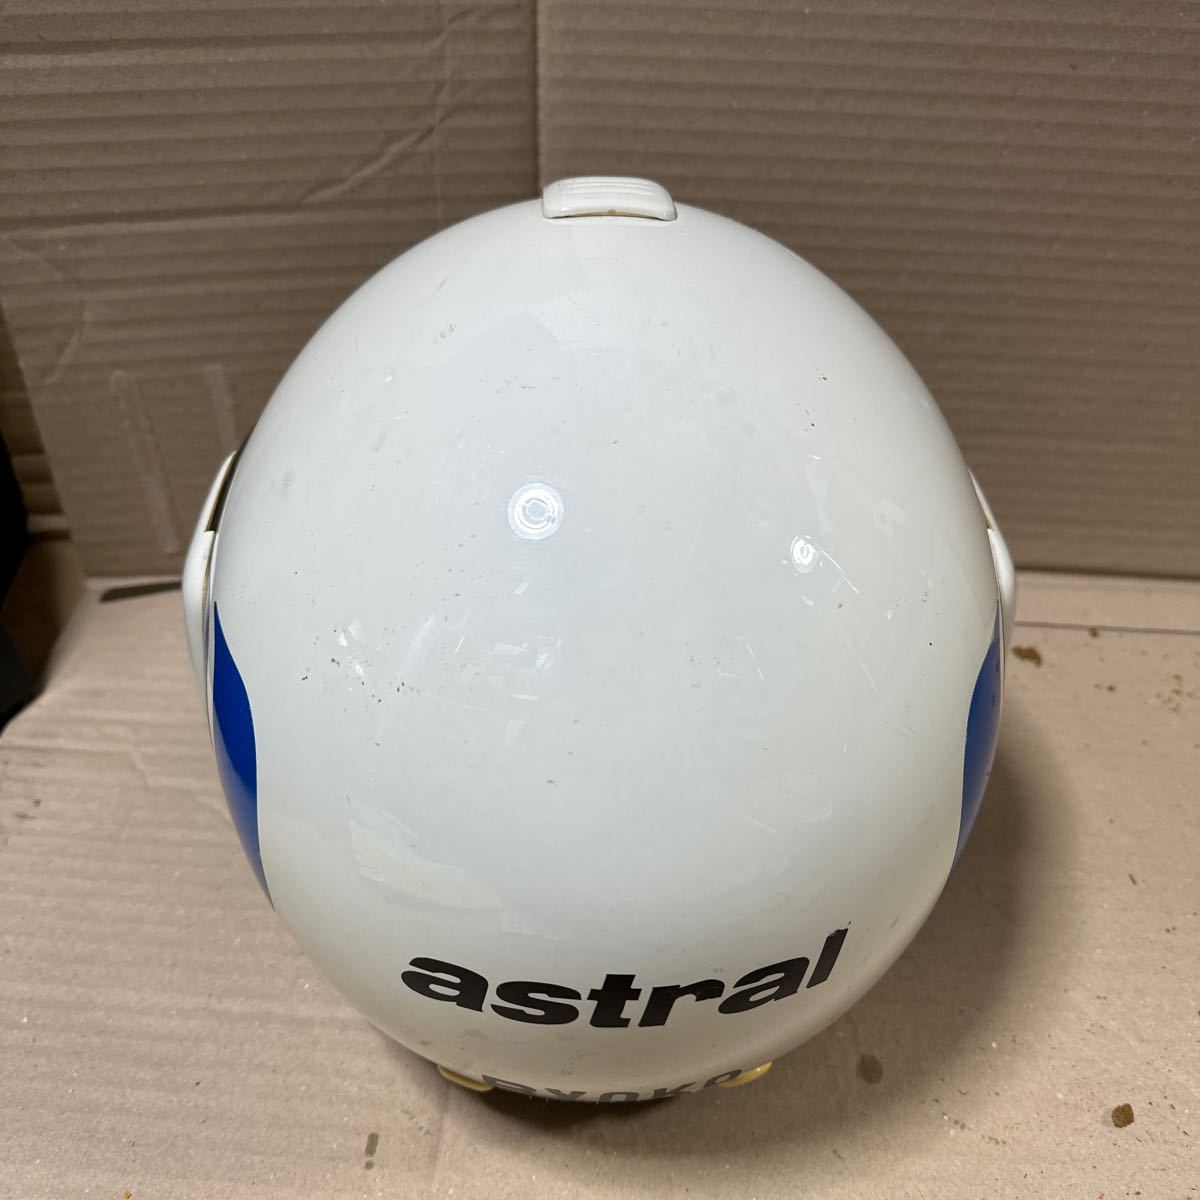 a-4657)KUNOH helmet ( size unknown )